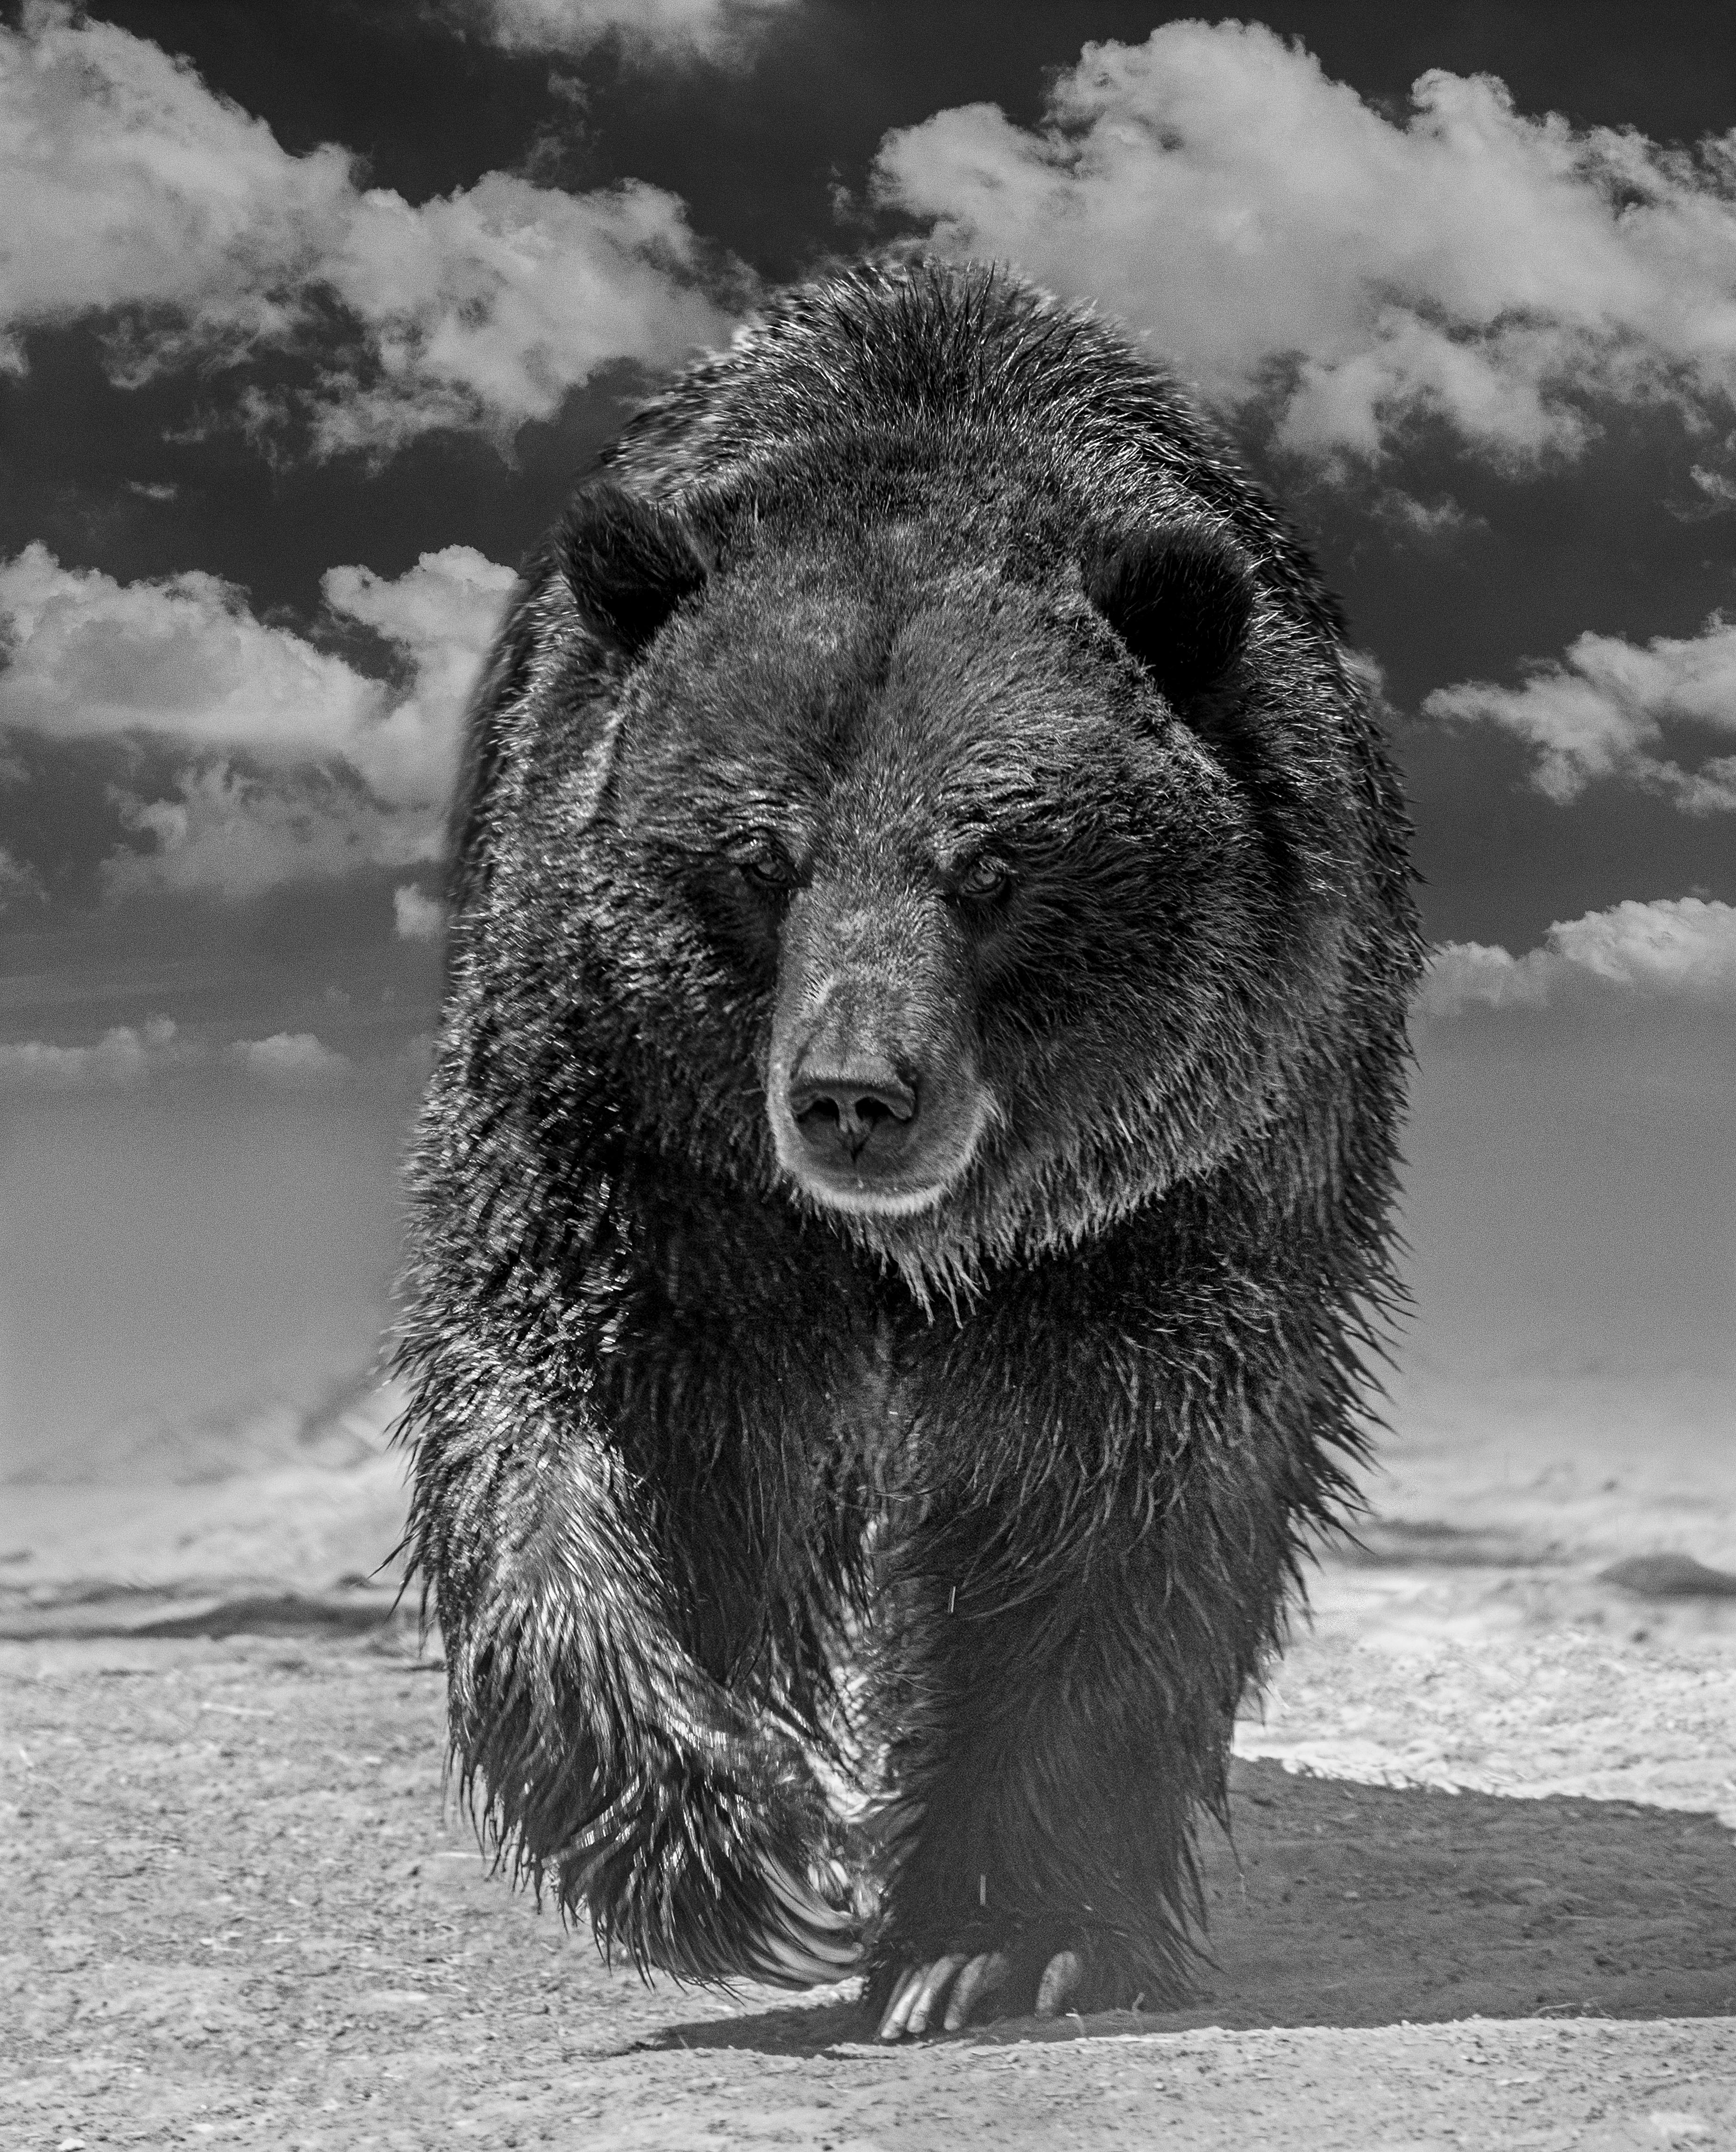 Black and White Photograph Shane Russeck - Grizzly Shores - Photographie d'ours en noir et blanc 36x48 - Photographie d'art